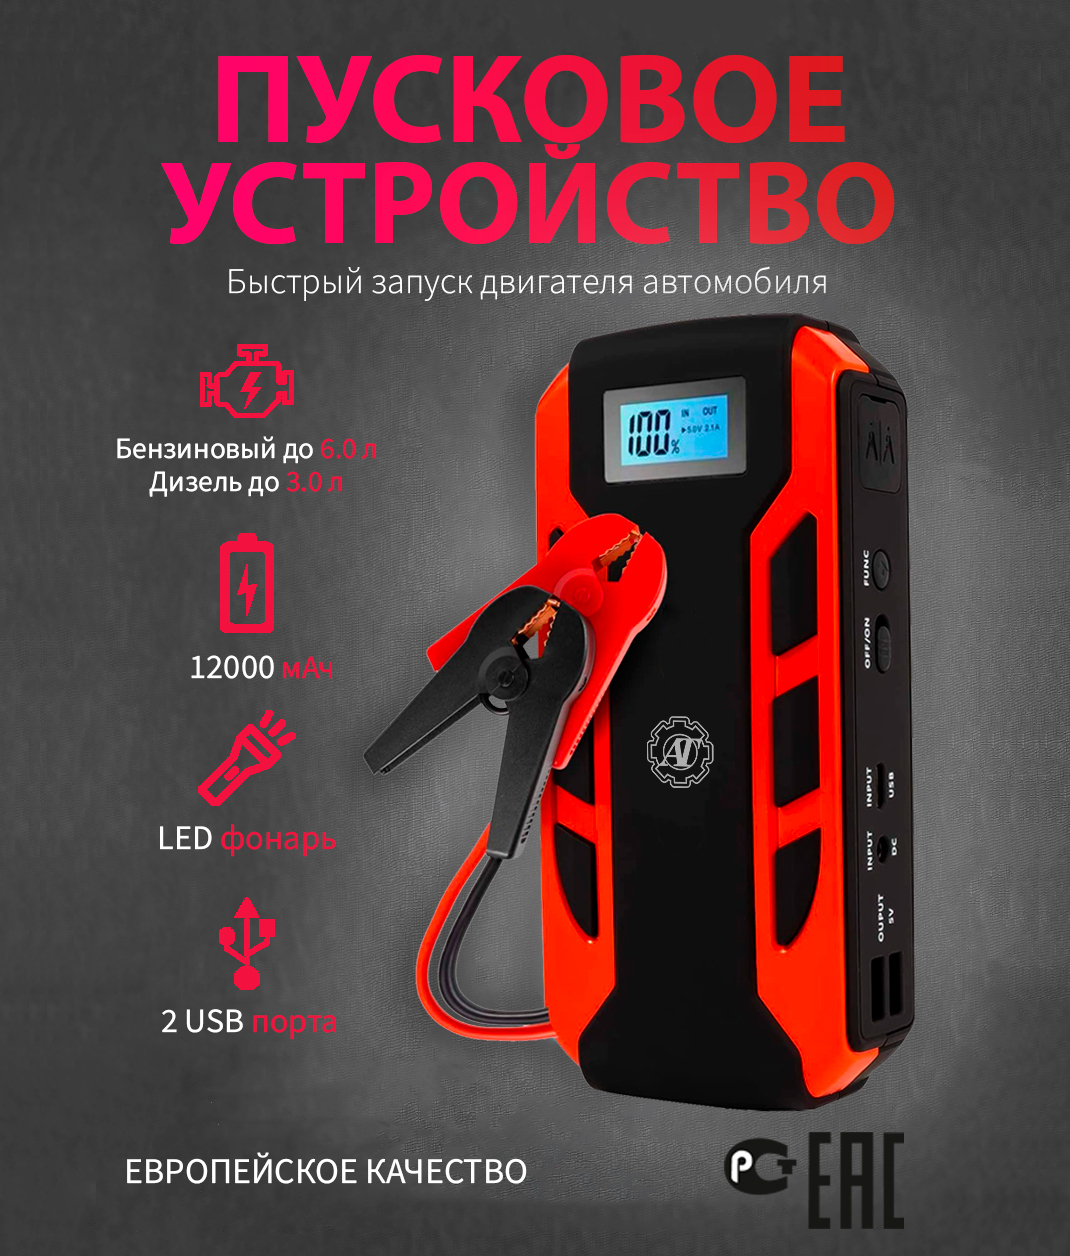 Многофункциональный внешний аккумулятор для запуска авто — Купить в Астане на hb-crm.ru #